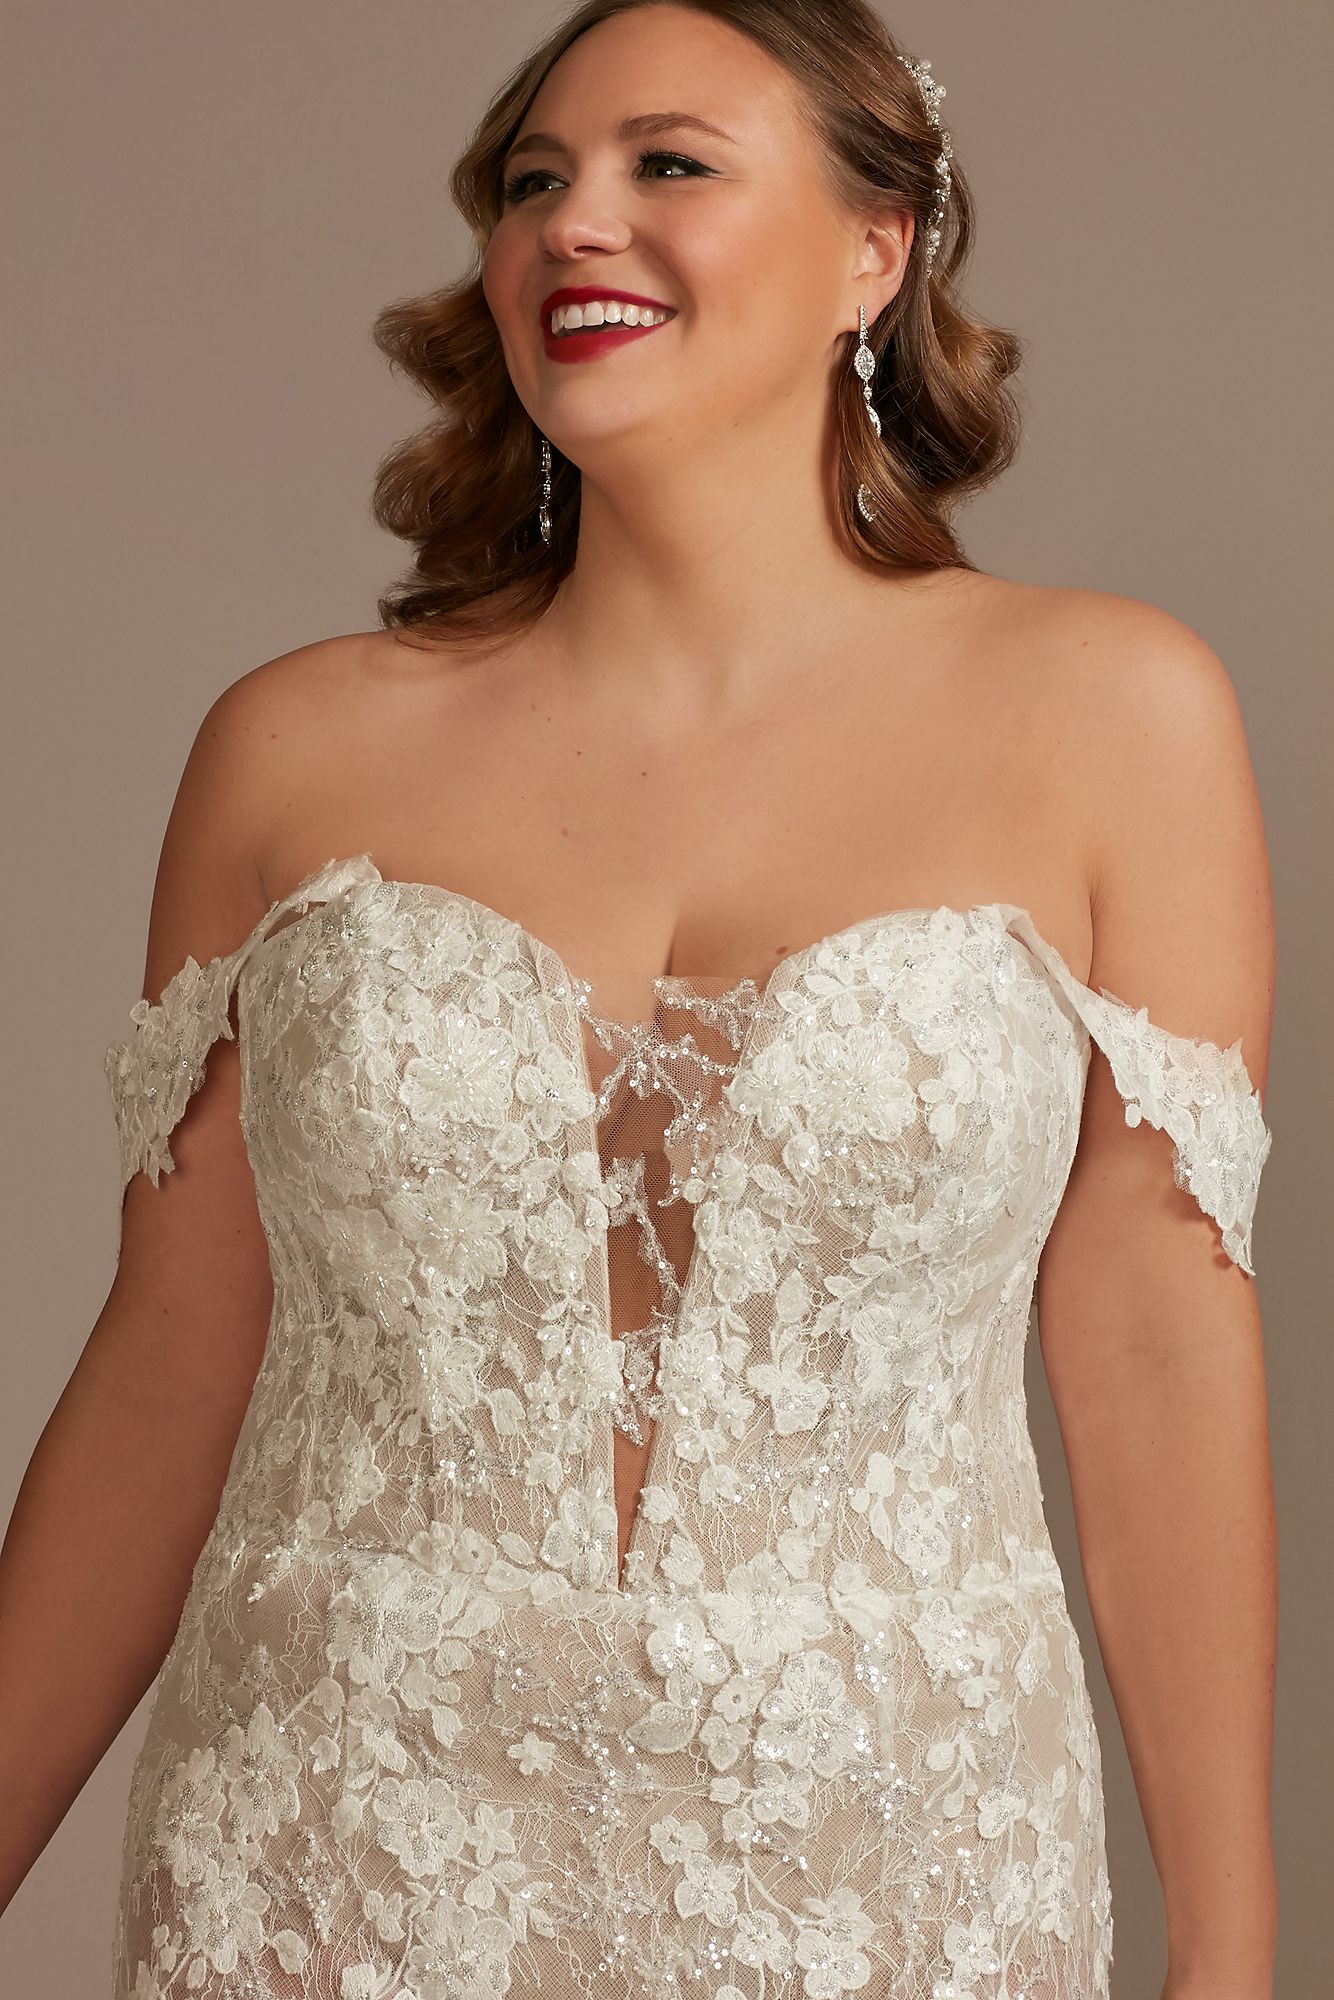 Embellished Illusion Lace Plus Size Wedding Dress Galina Signature 9MBSWG899